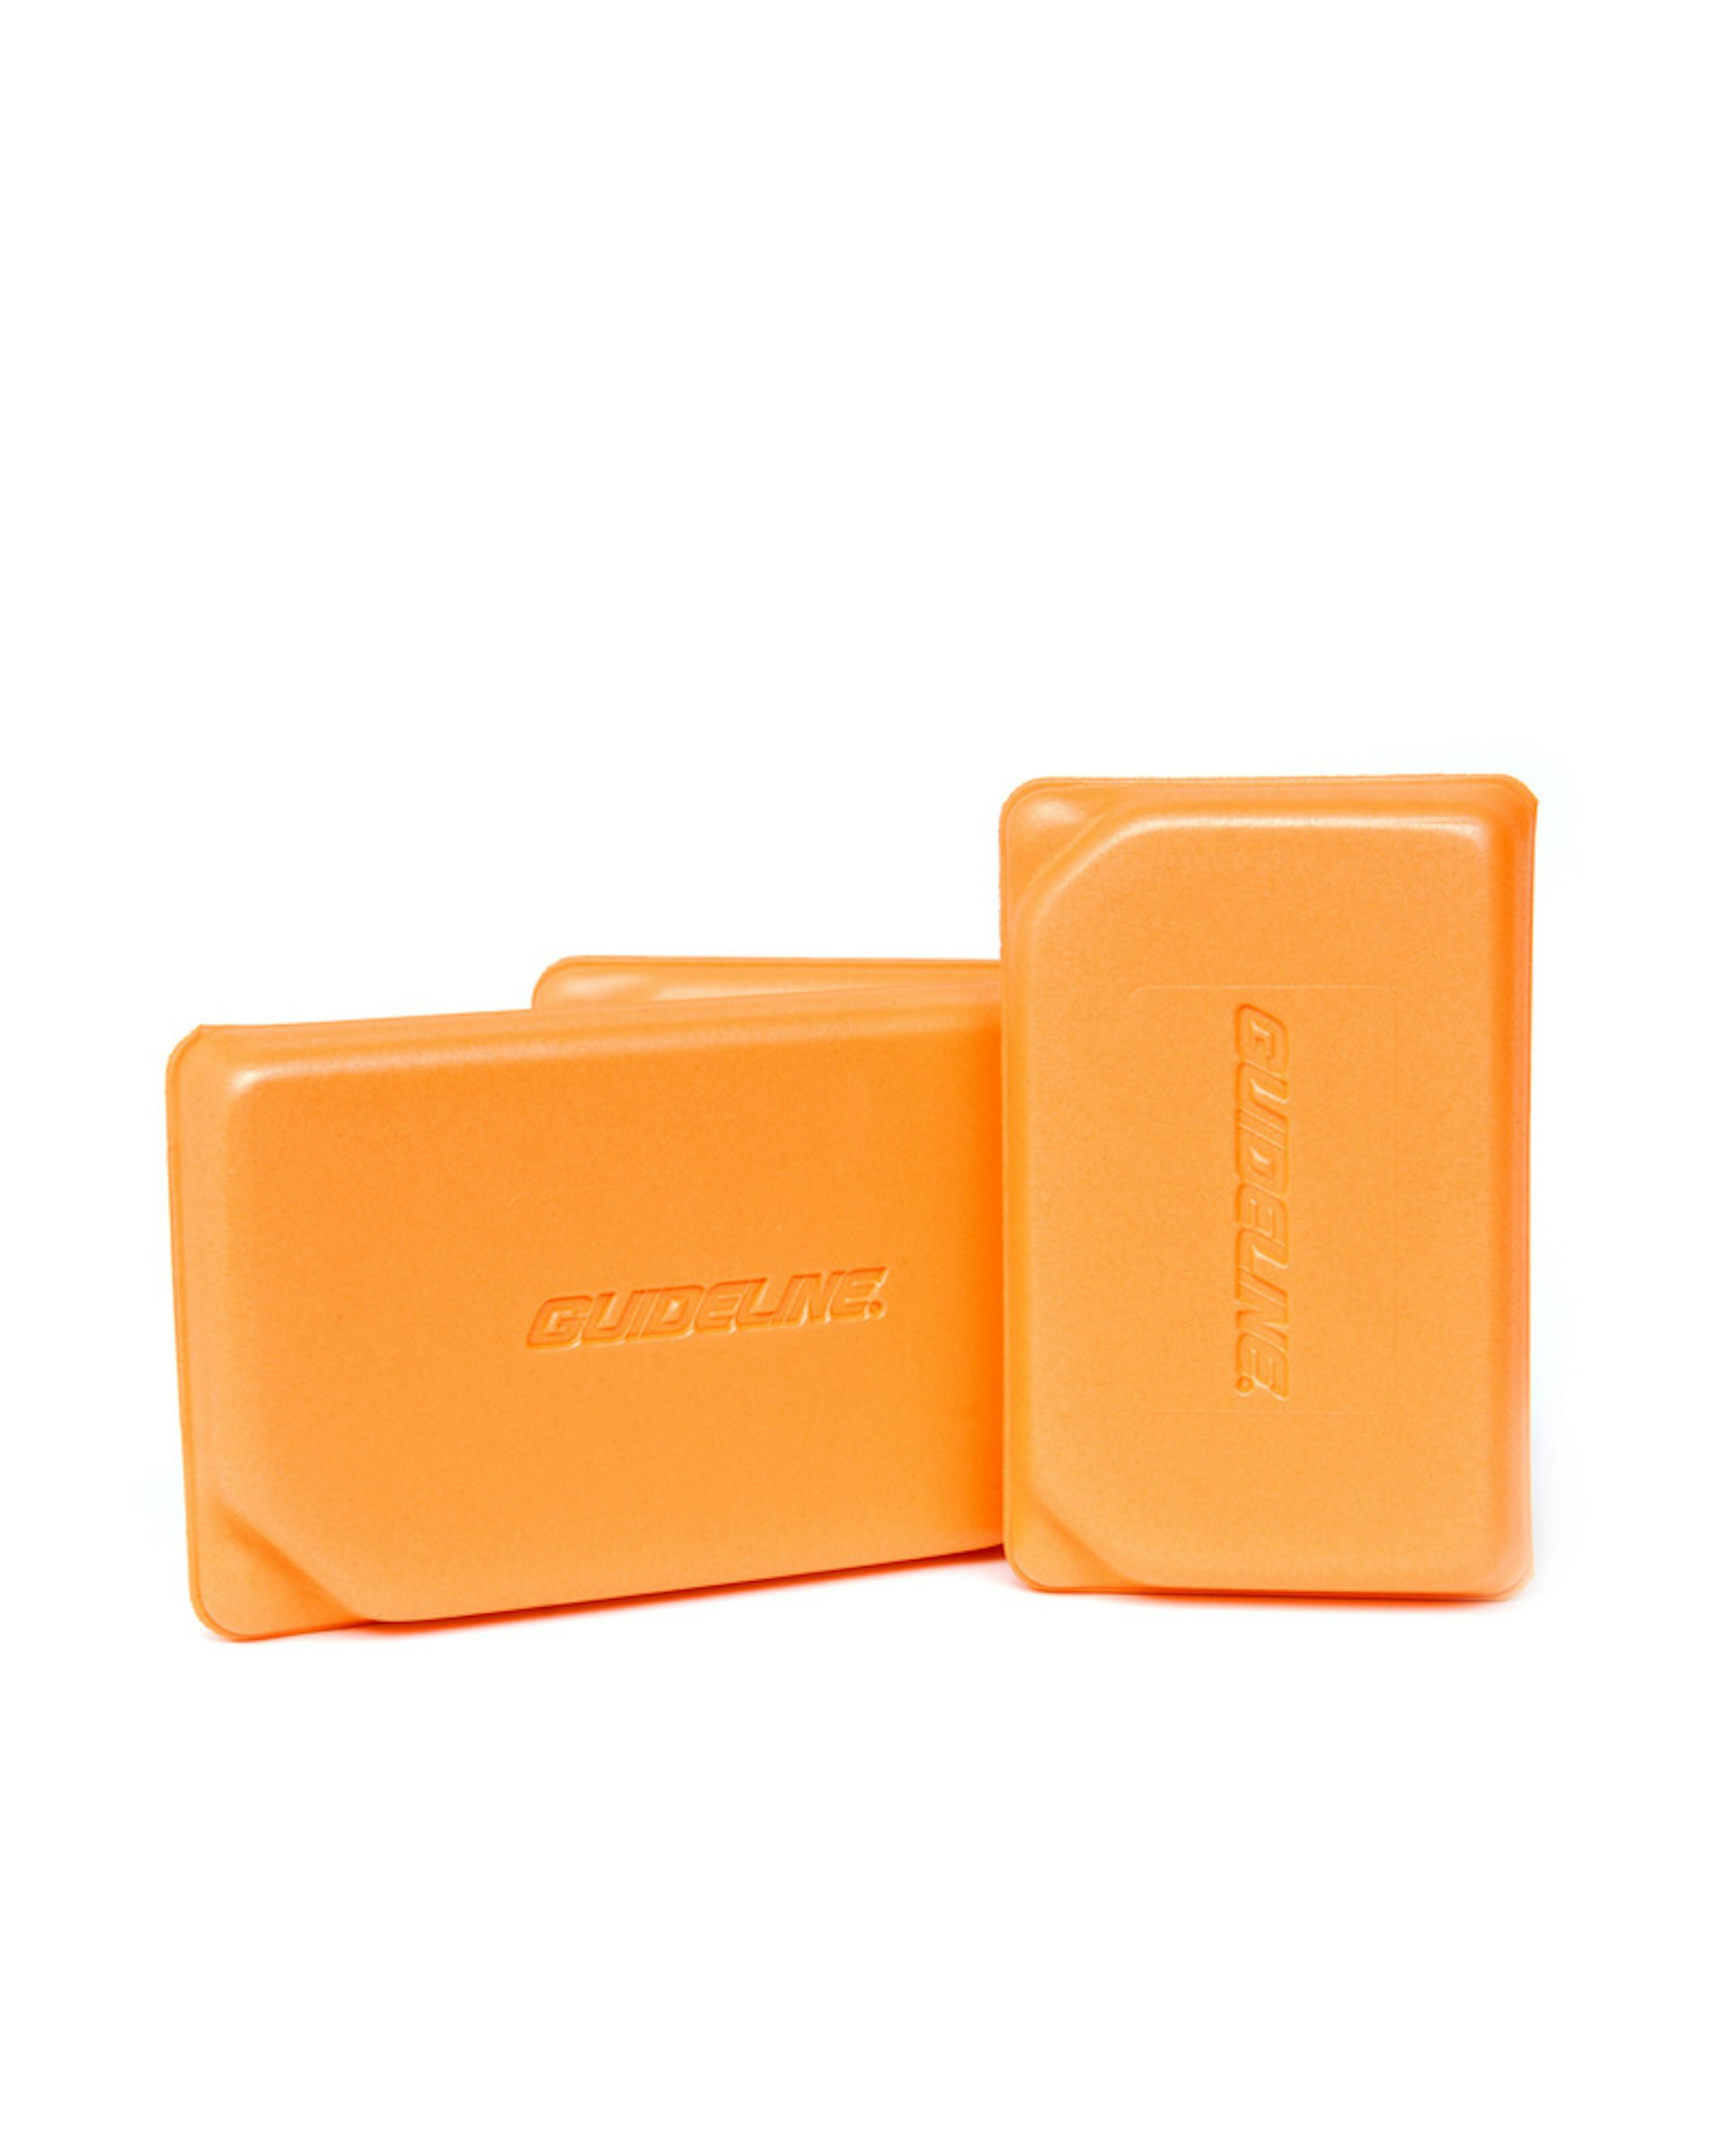 Ultralight Foam Box Orange S (bilde 3 av 3)